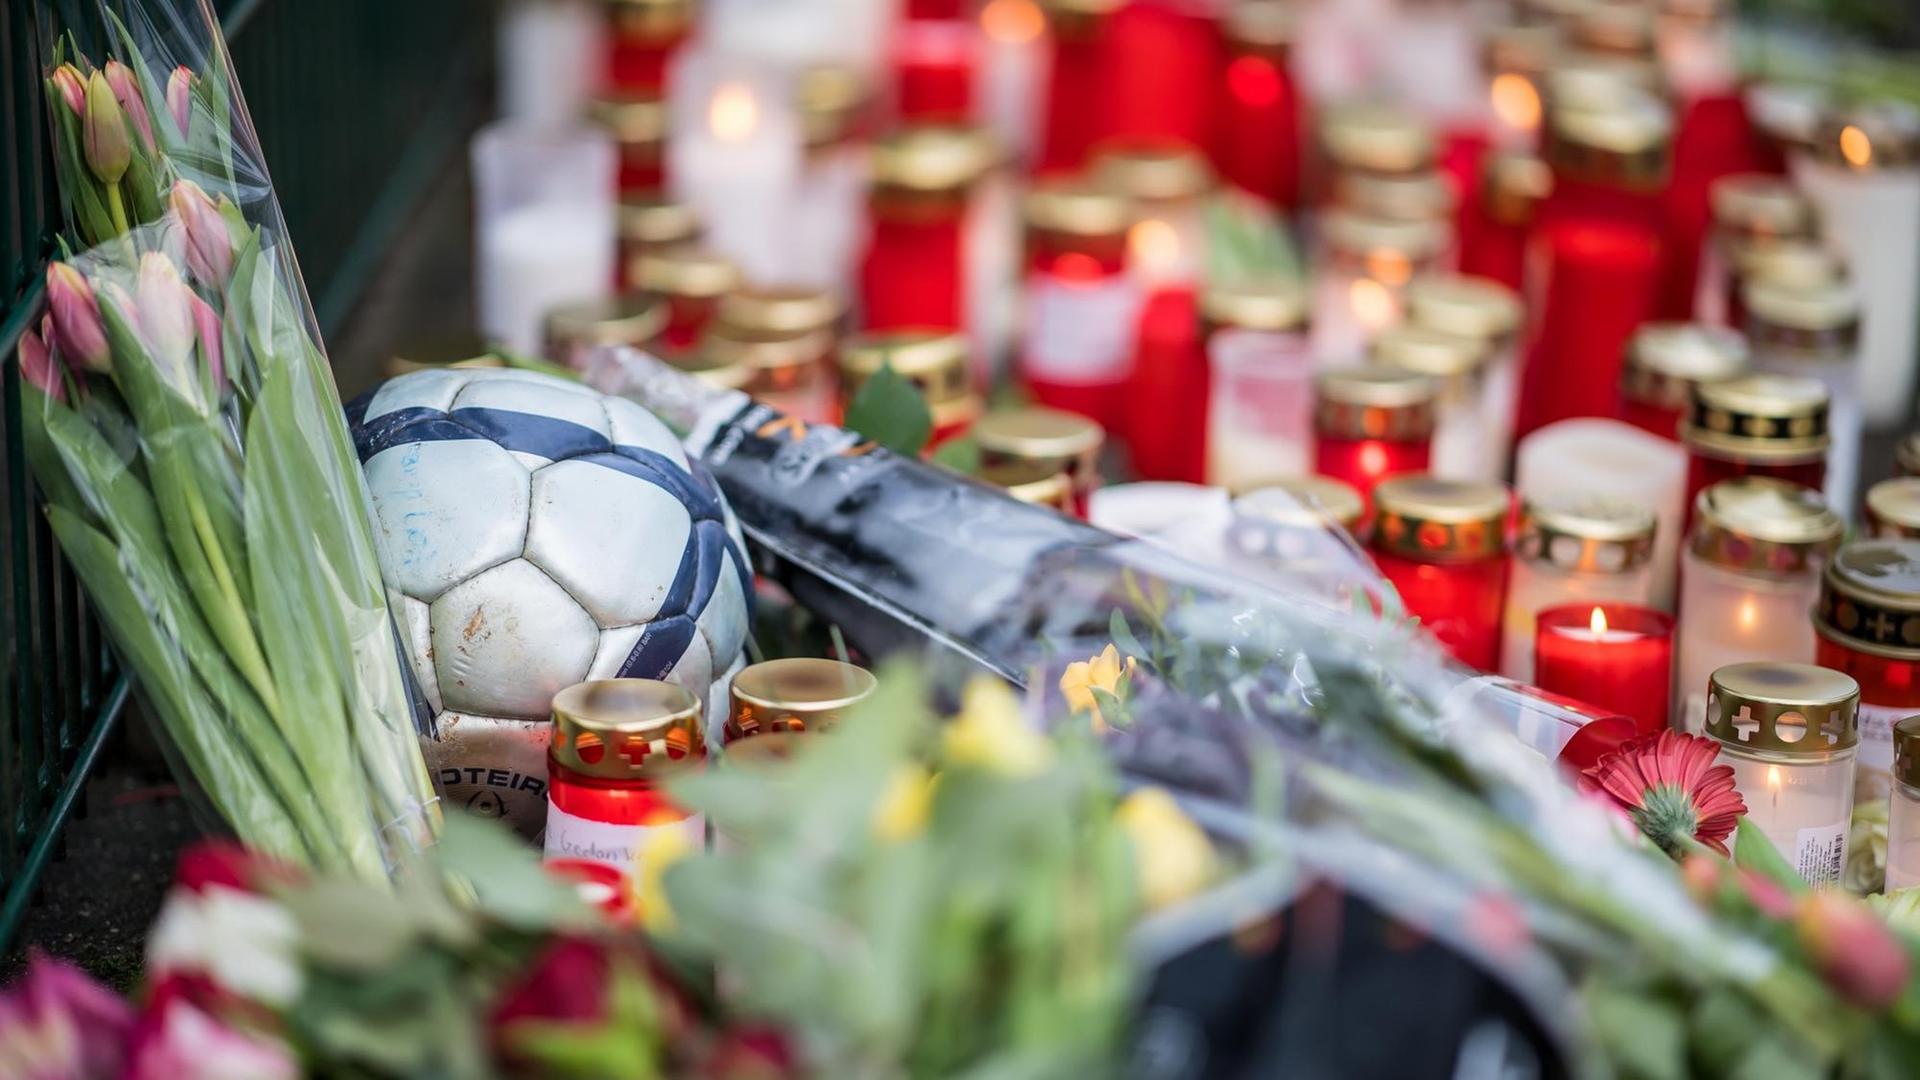 An der Käthe-Kollwitz-Gesamtschule in Lünen (Nordrhein-Westfalen) liegt am 24.01.2018 zwischen Trauerkerzen und Blumen ein Fußball. Ein Schüler soll einen Mitschüler getötet haben. Der tatverdächtige 15-Jährige wurde am Dienstagmorgen festgenommen, wie Staatsanwaltschaft und Polizei in Dortmund mitteilten.